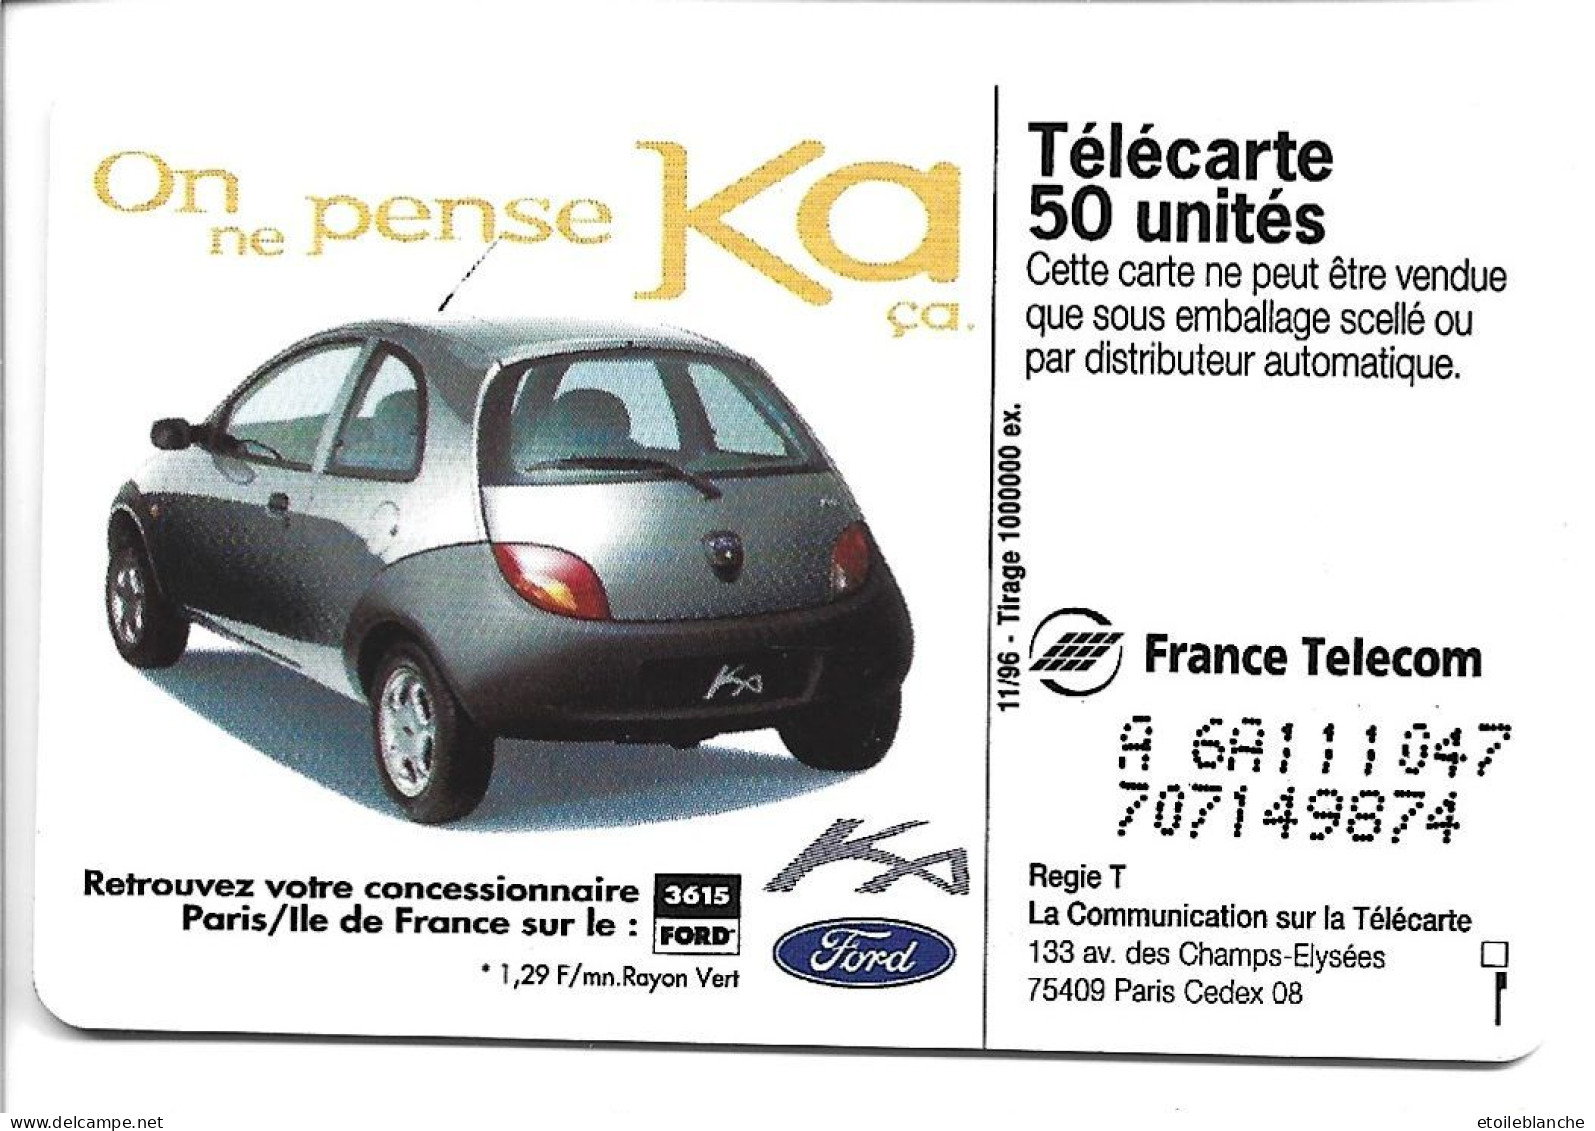 Telecarte Publicité Voiture Ford KA, On Ne Pense Qu'à ça -  Concessionnaire Paris Sur Minitel 3615 Ford - Voitures